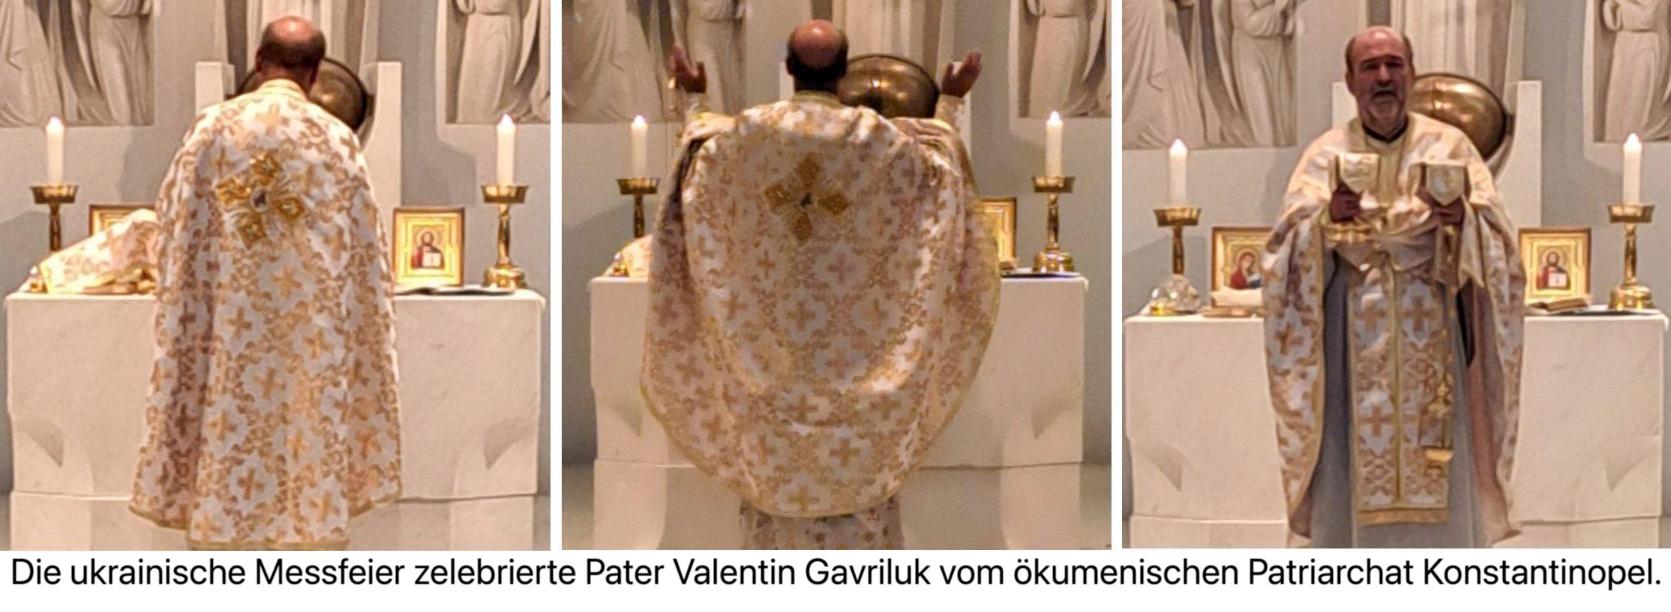 Pater Valentin zelebriert die Messfeier (c) W. Krenz '23